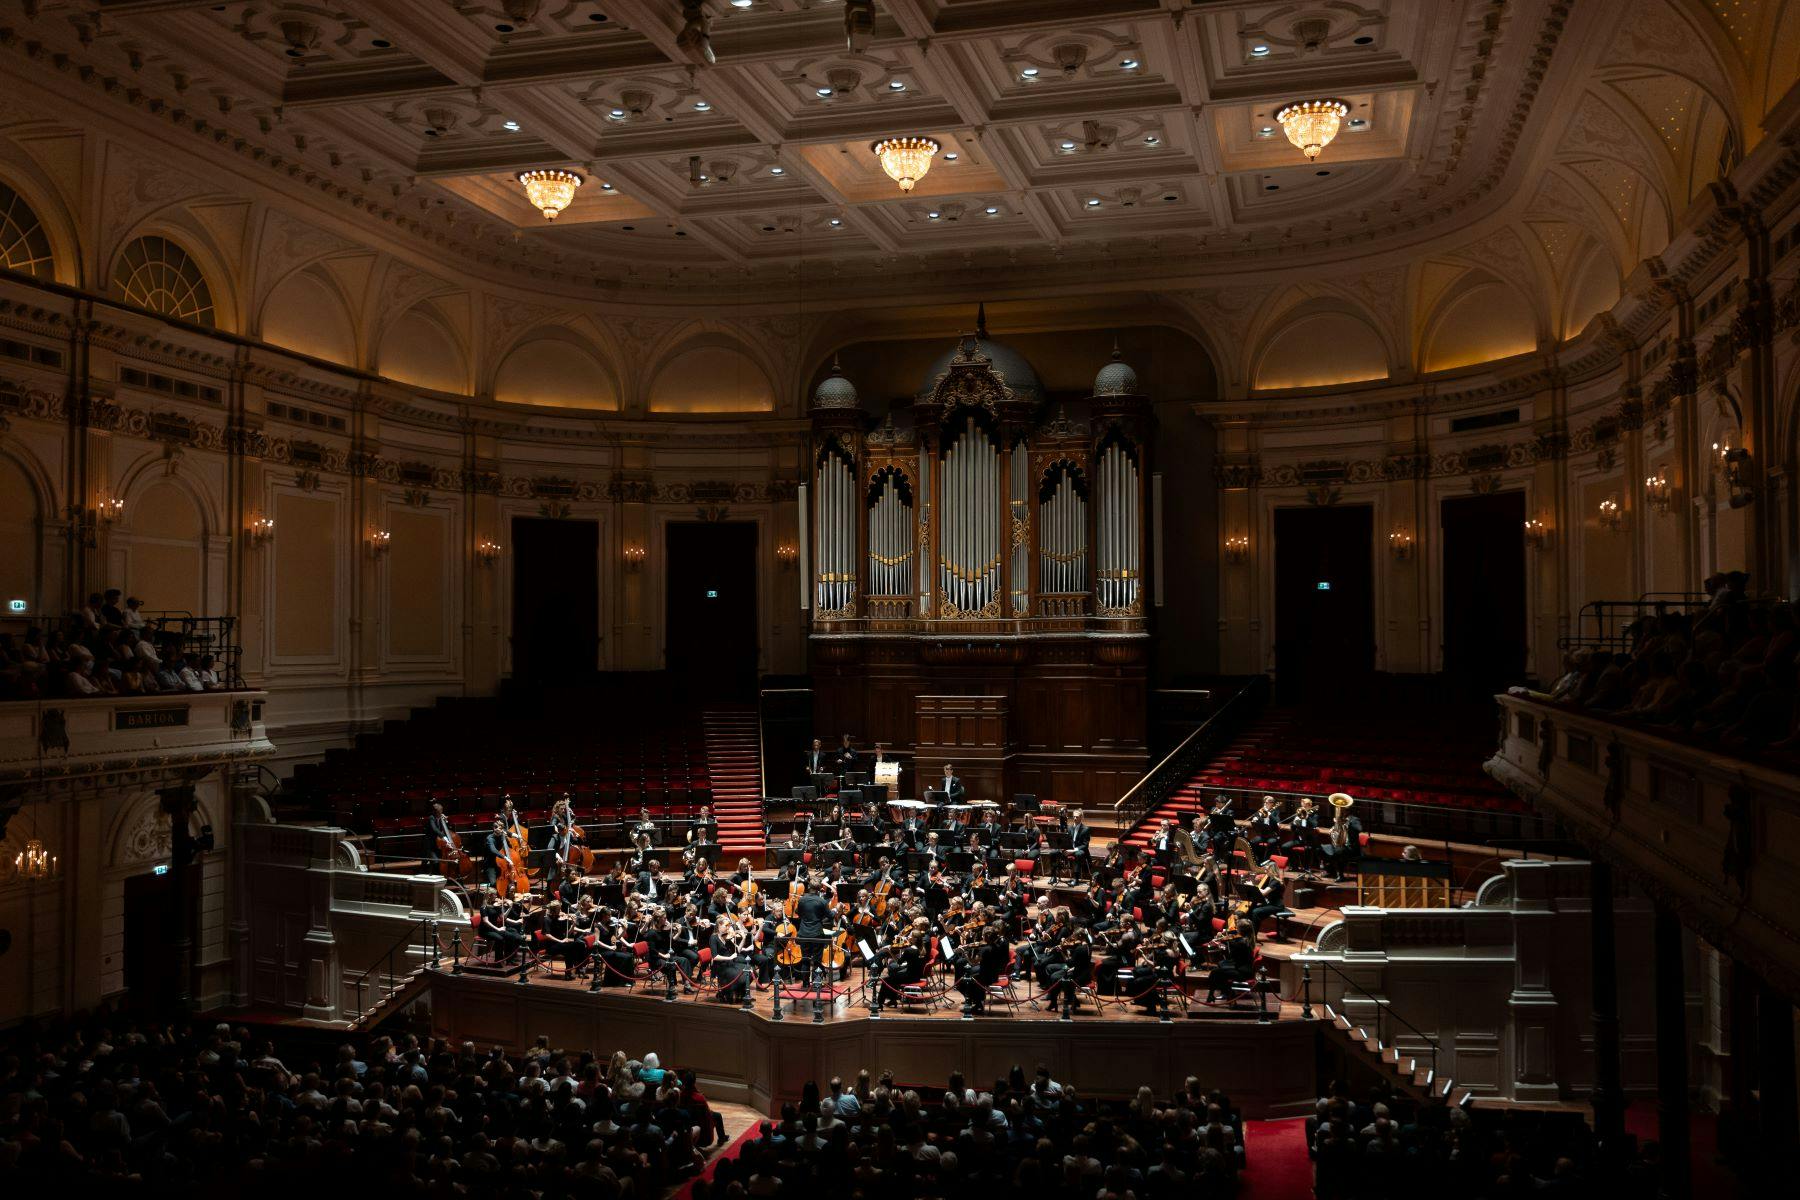 Sweelinck Orchestra gives benefit concert for Black Jaguar Foundation